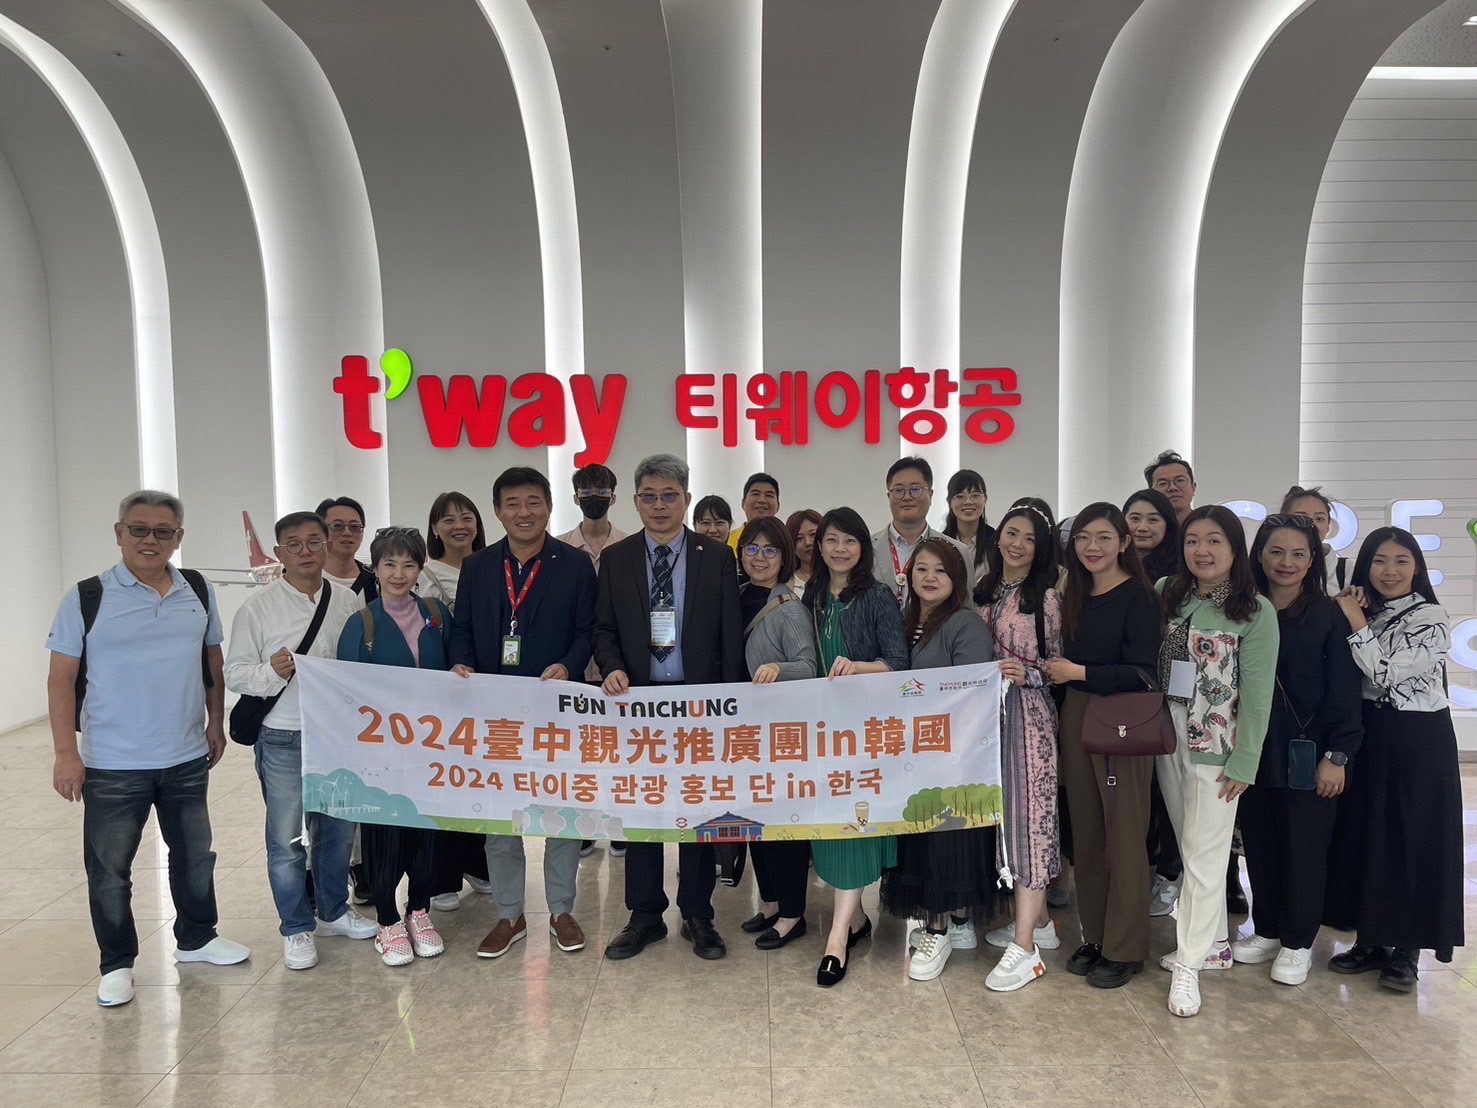 中市觀旅局延續韓國綜藝節目熱潮  赴韓辦理「台中觀光推介會」成果豐碩